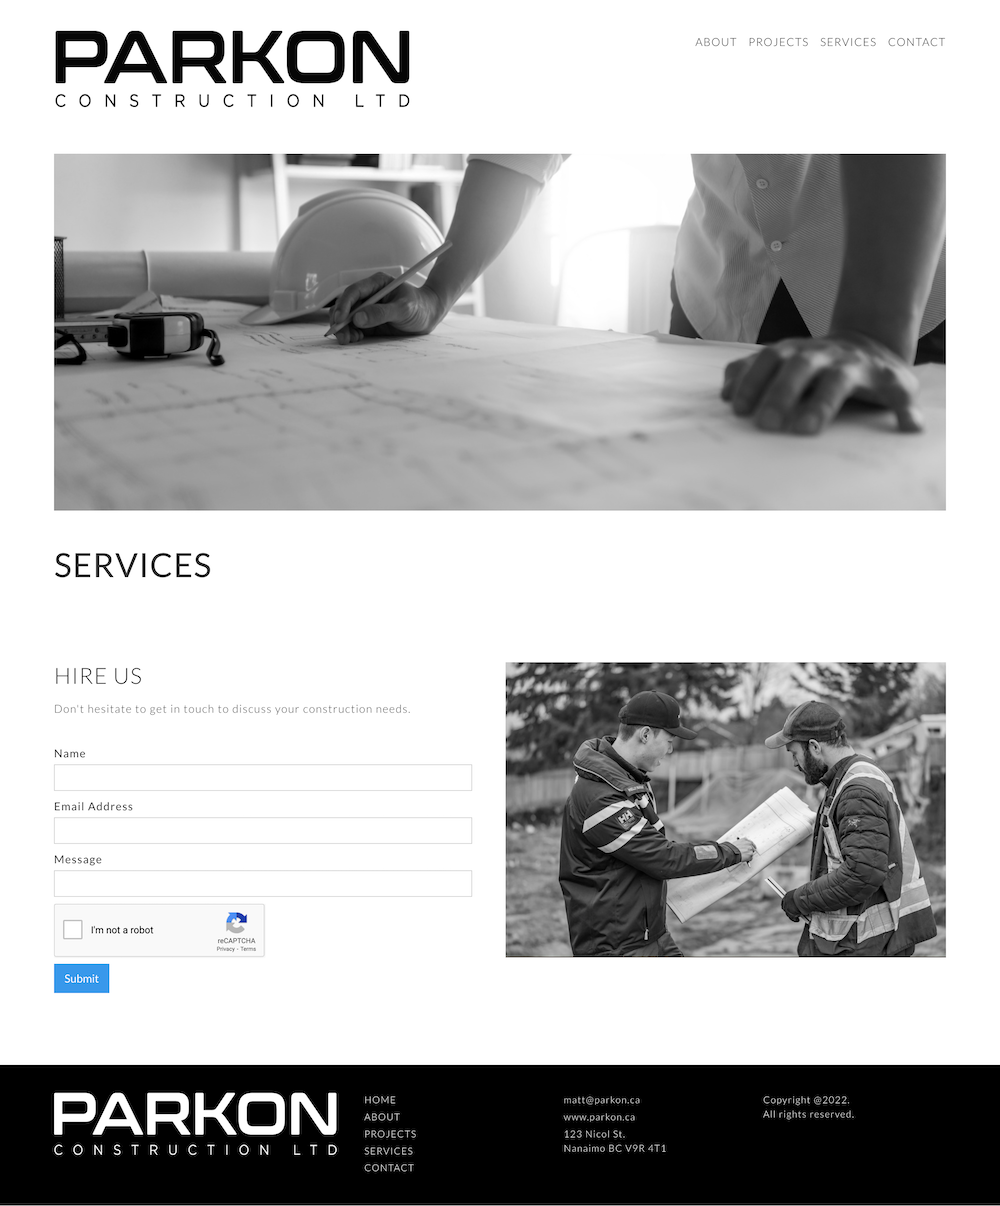 Parkon Construction - Services page